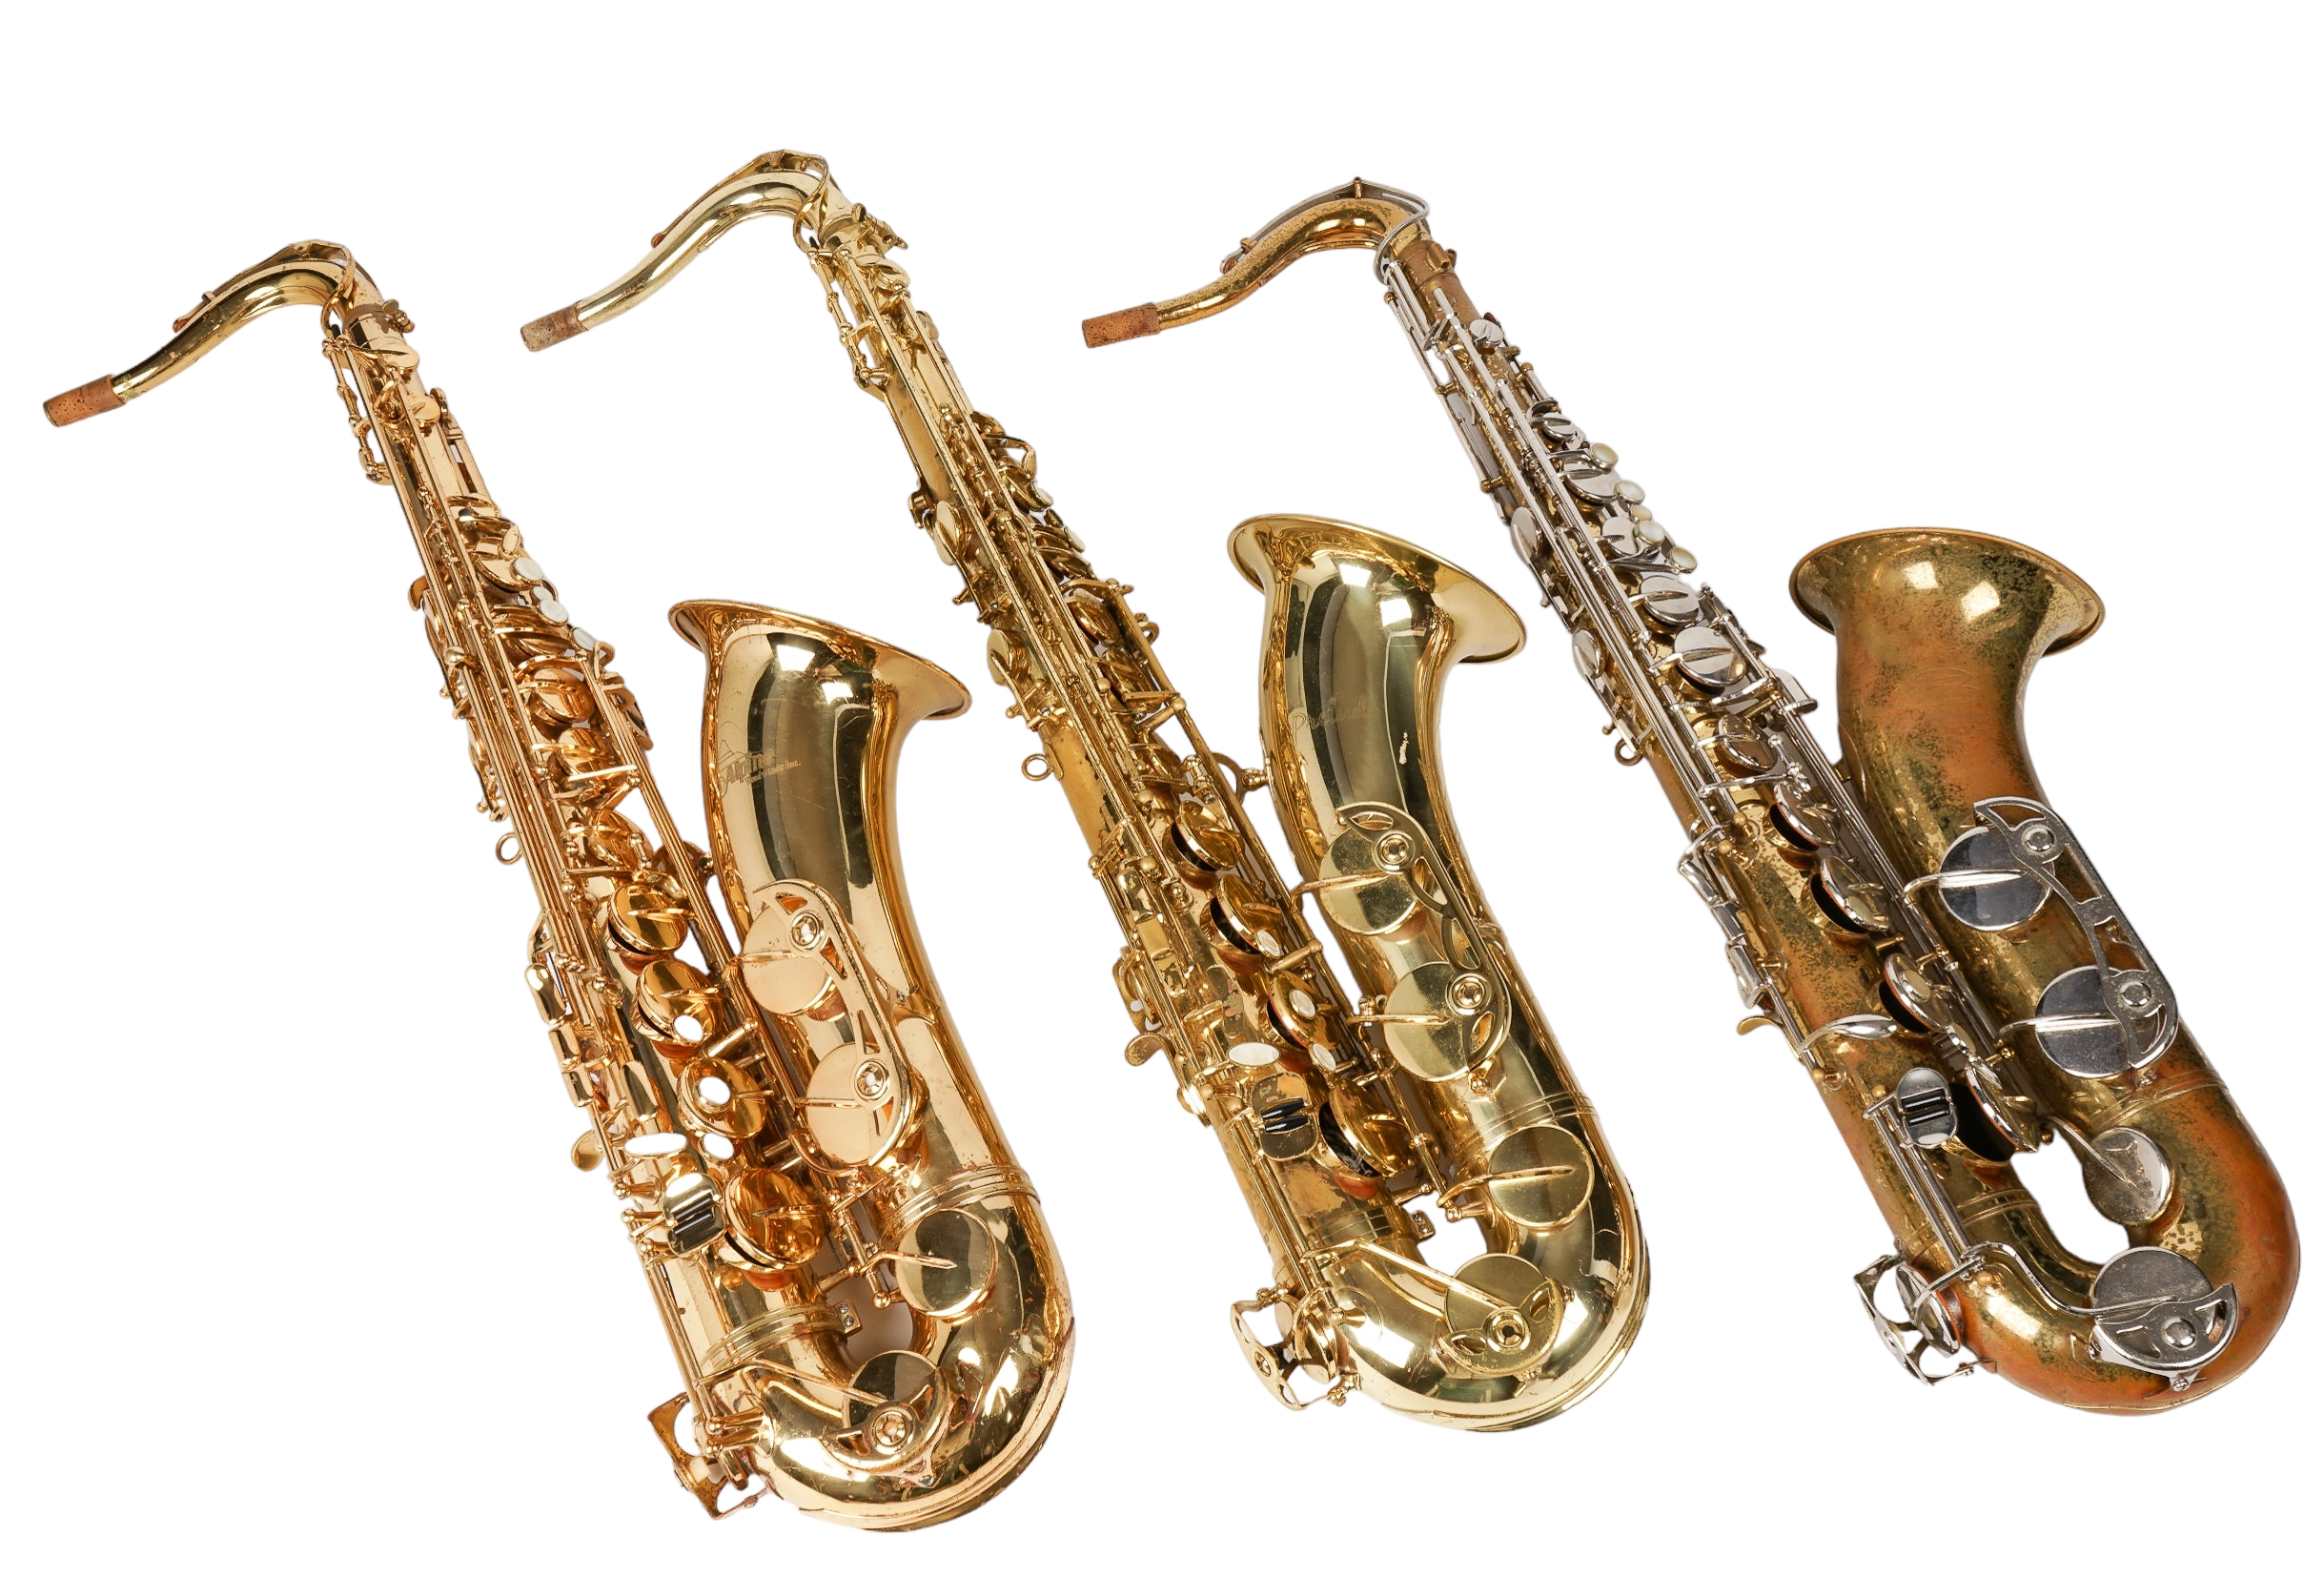  3 Tenor saxophones c o Buescher 2e229d